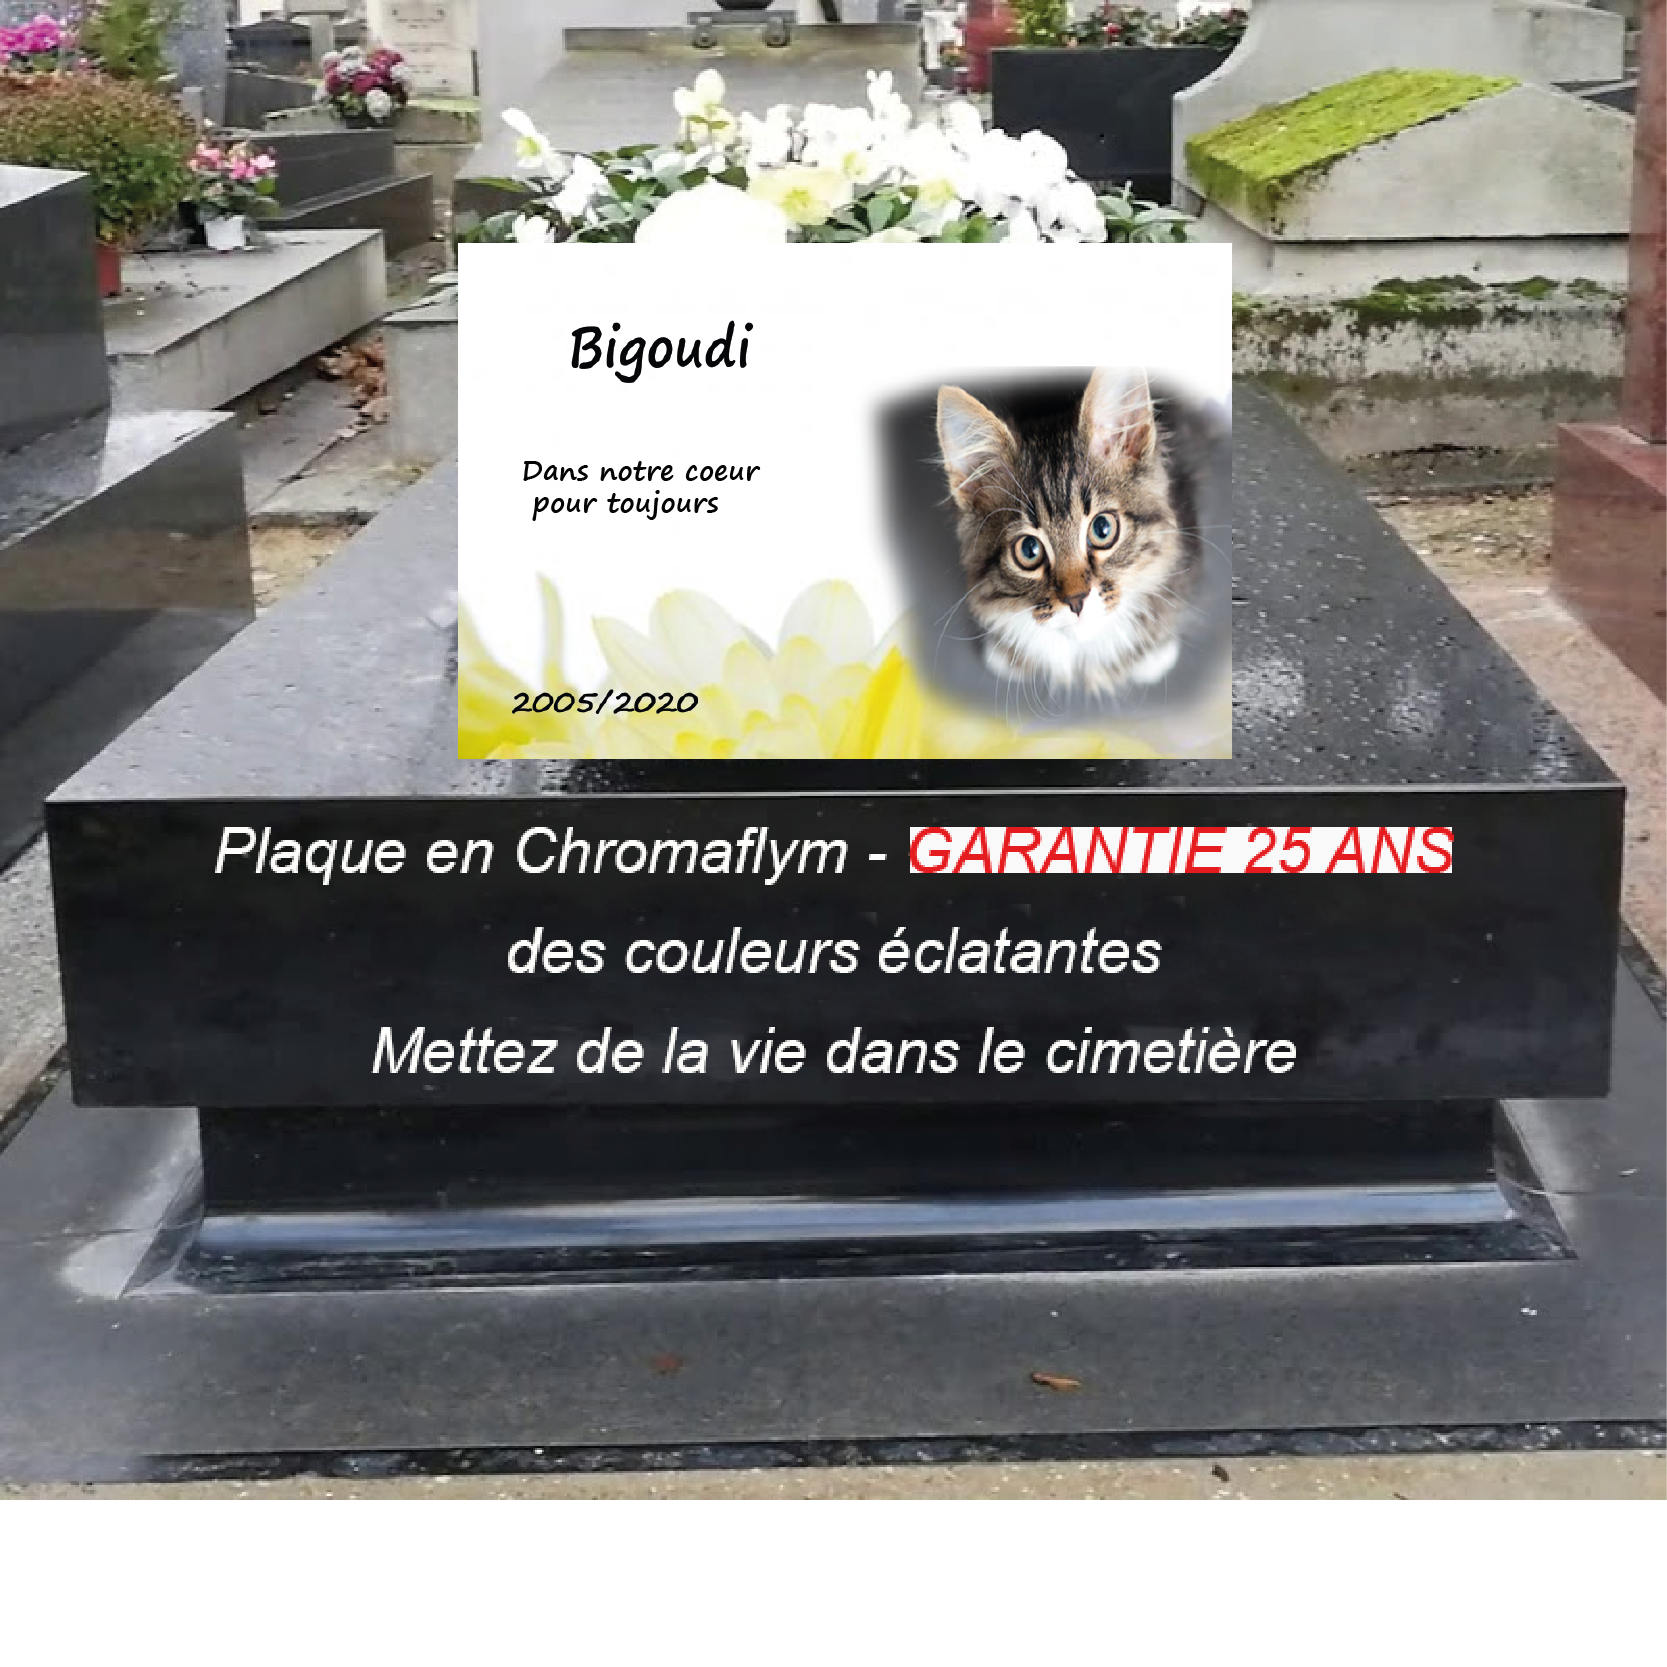 Plaque funéraire pour animal - Modèle chat, personnalisable - Boutique  Petits Anges